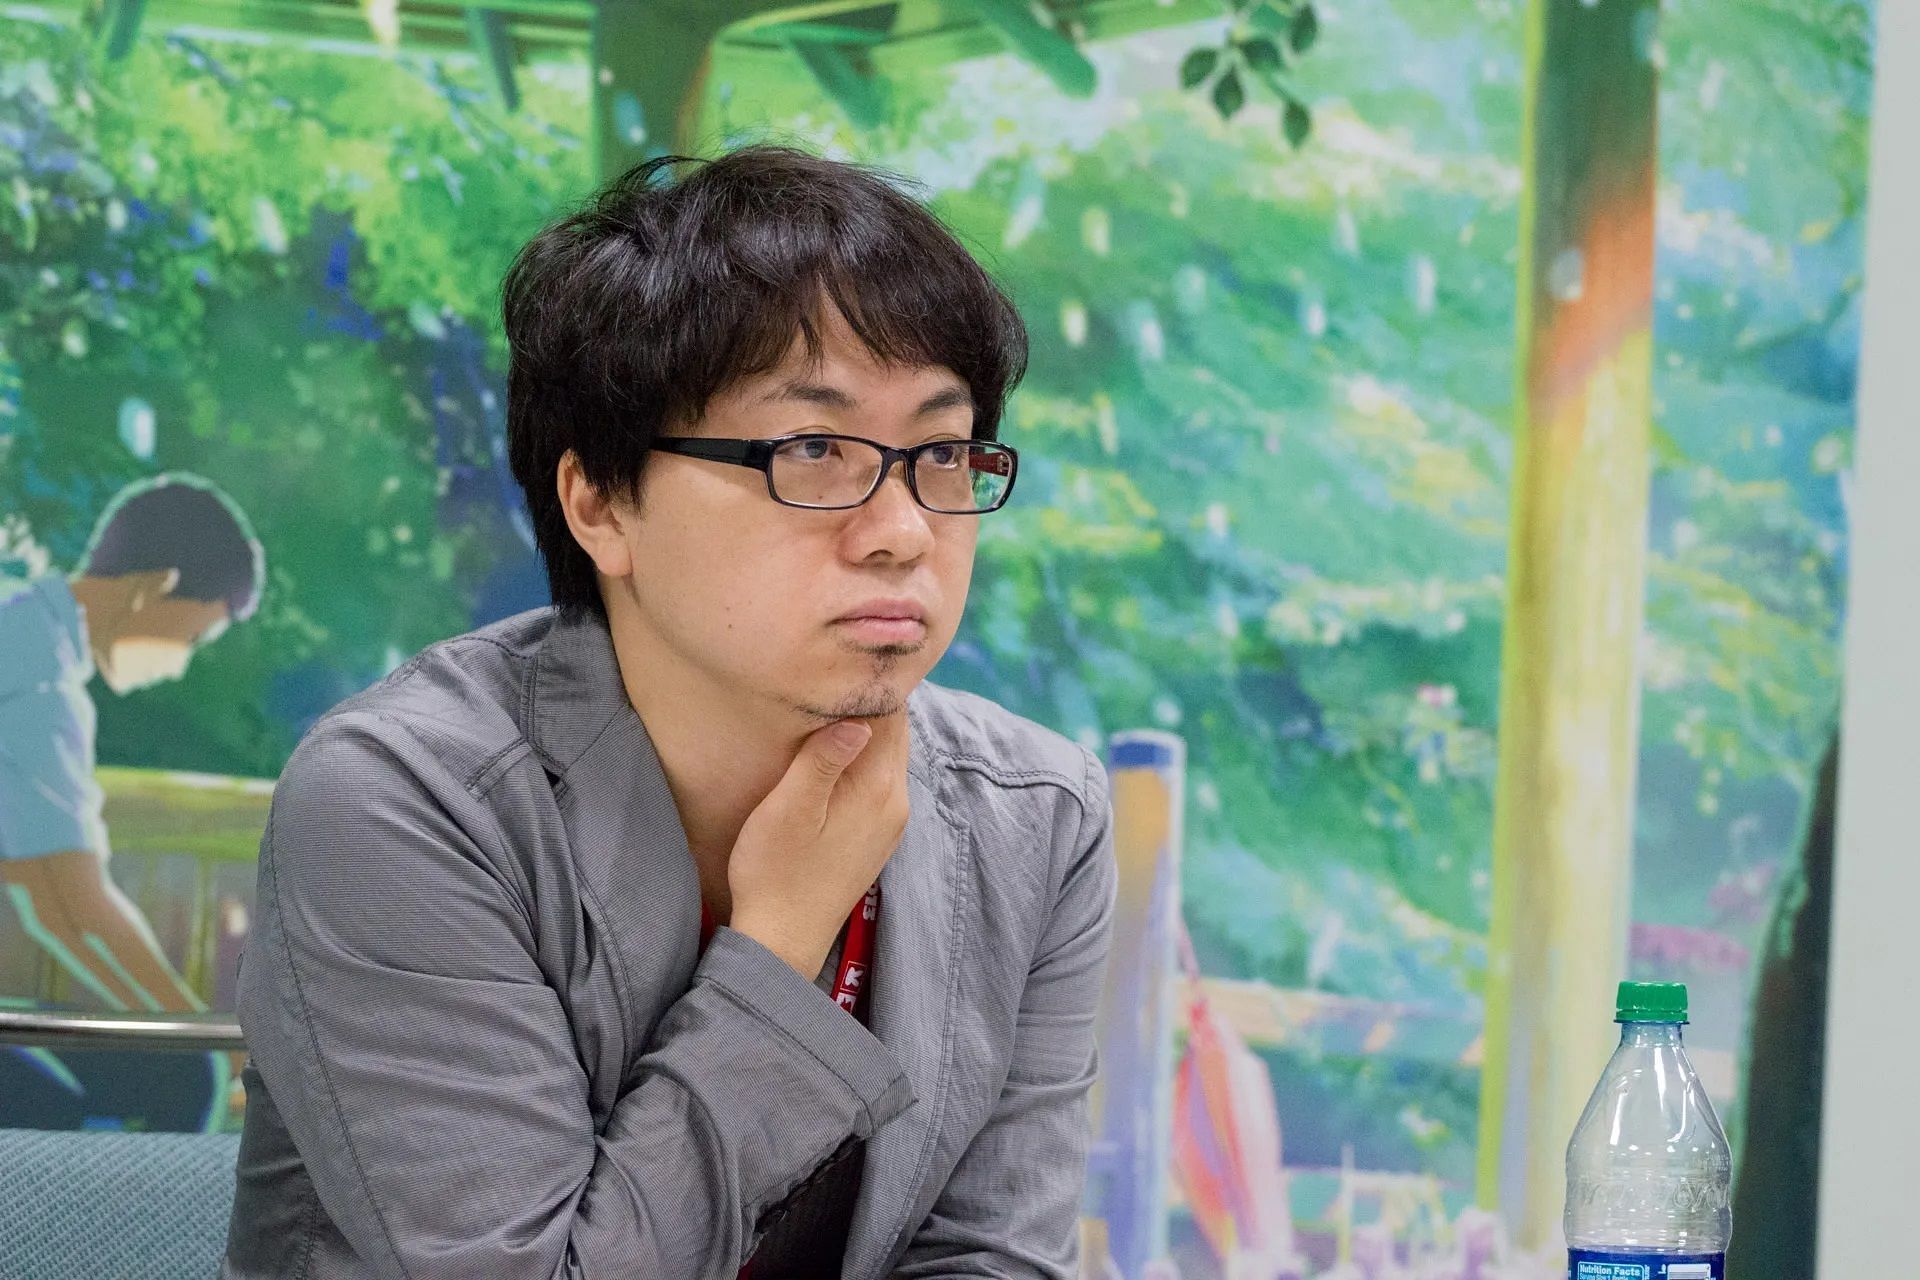 Makoto Shinkai during an interview at Anime Expo 2013 (Image via Animediet)